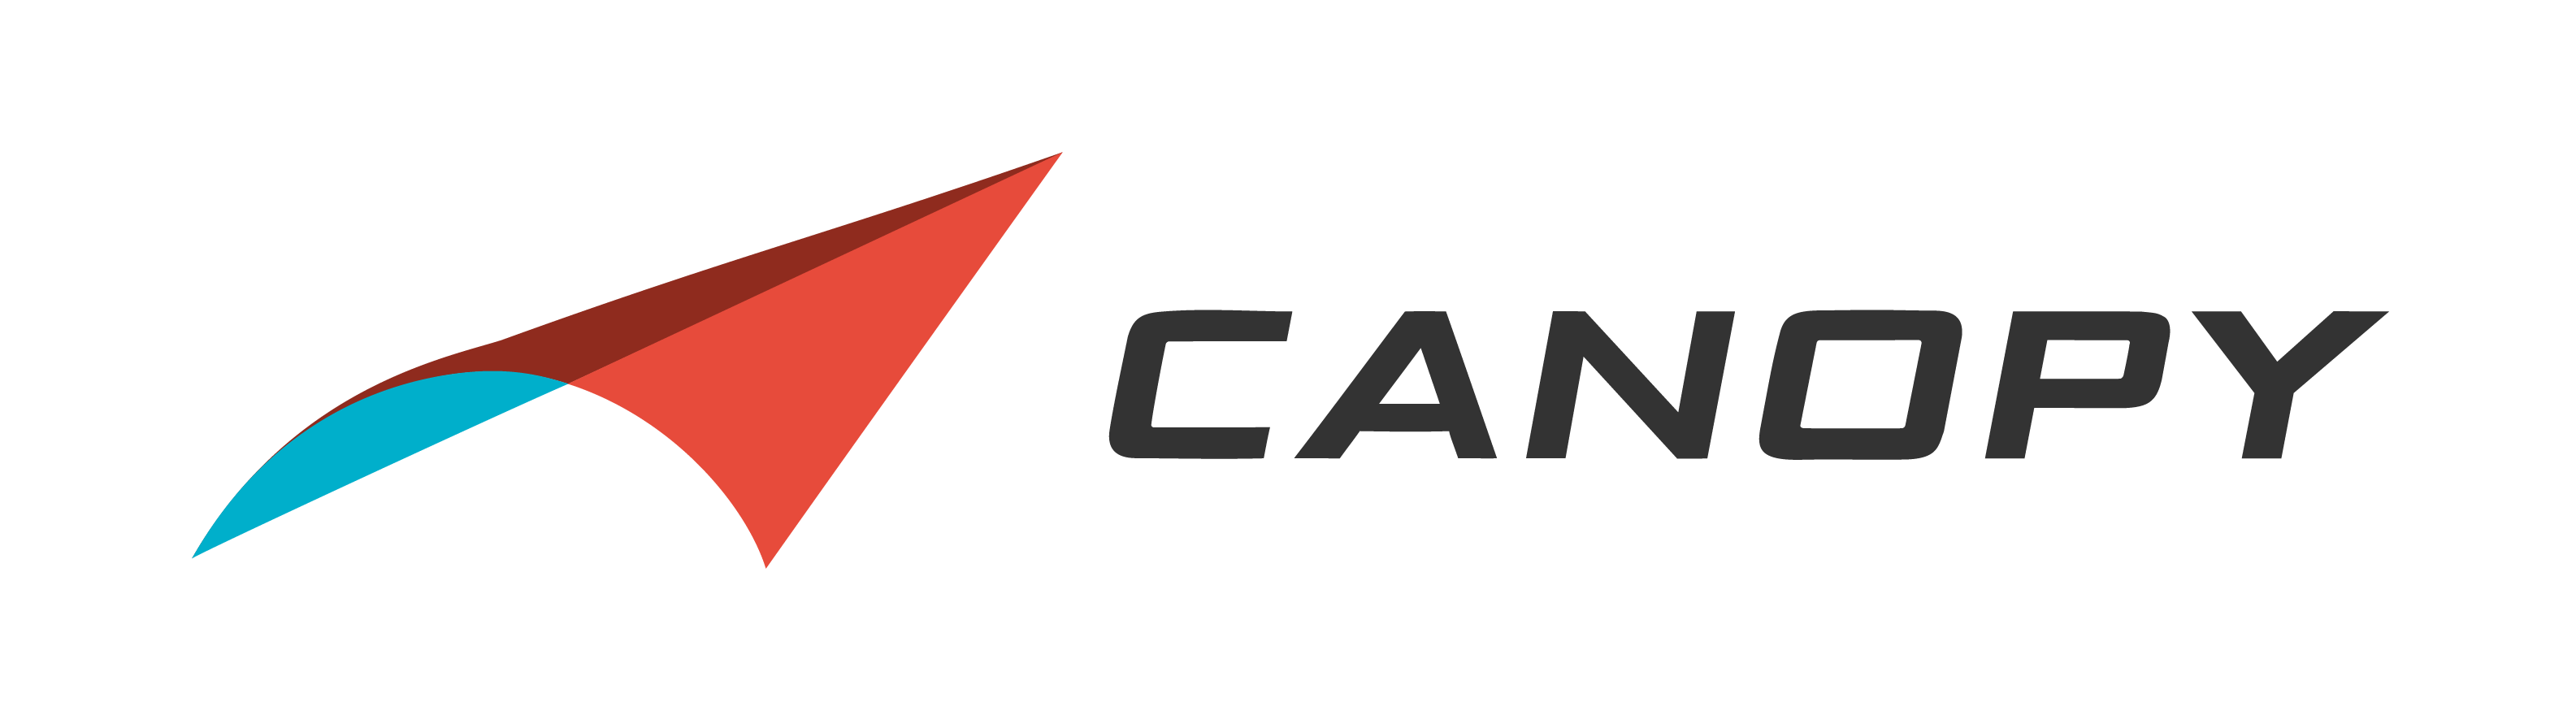 Canopy Aerospace Logo